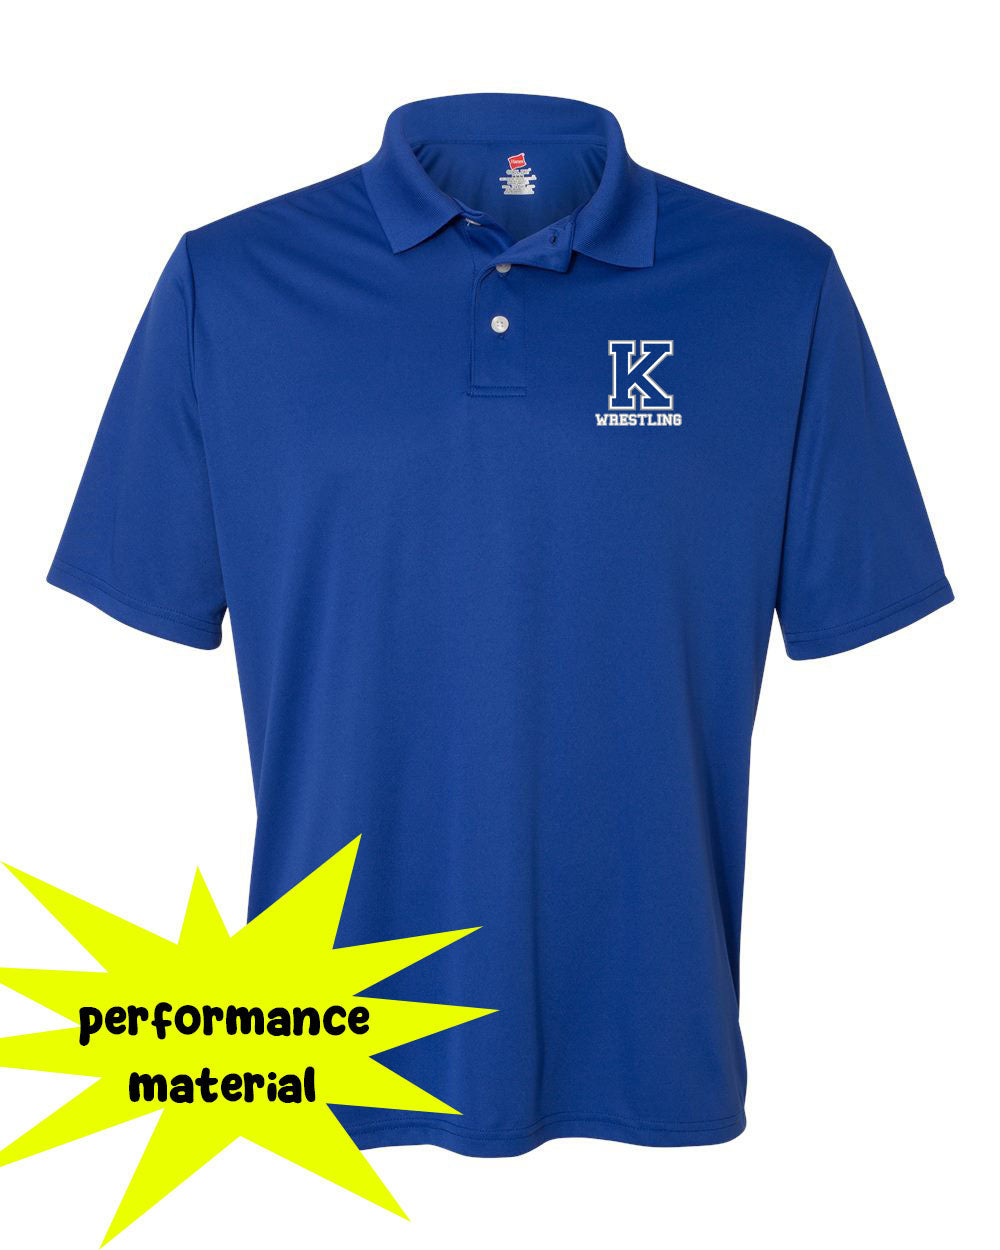 Kittatinny Wrestling Performance Material Polo T-Shirt Design 6